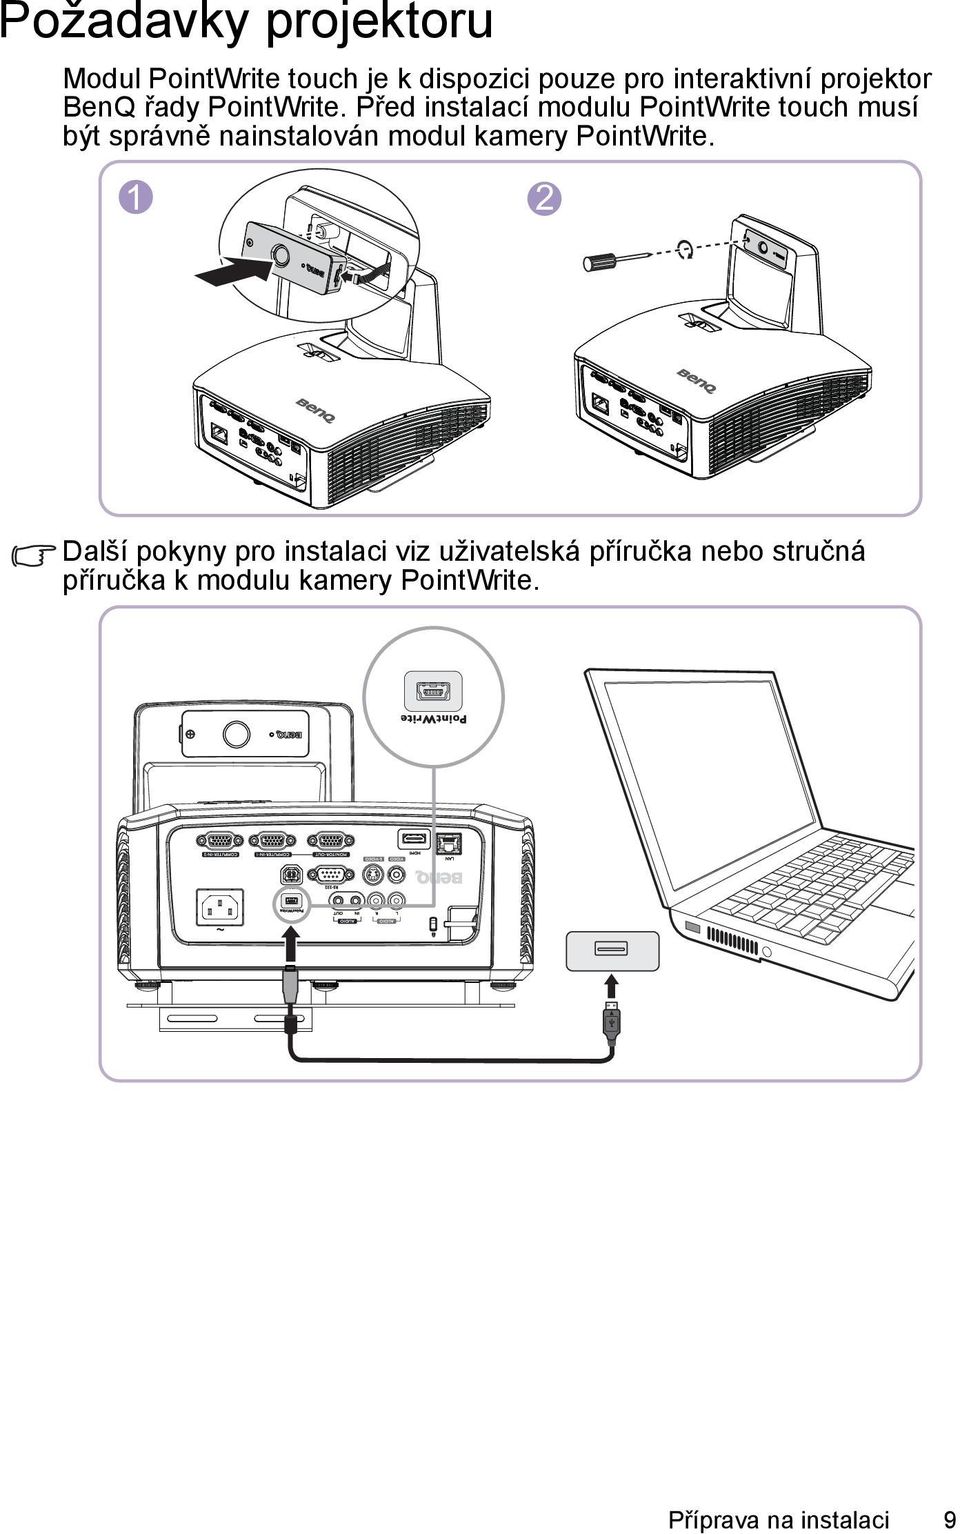 Před instalací modulu PointWrite touch musí být správně nainstalován modul kamery